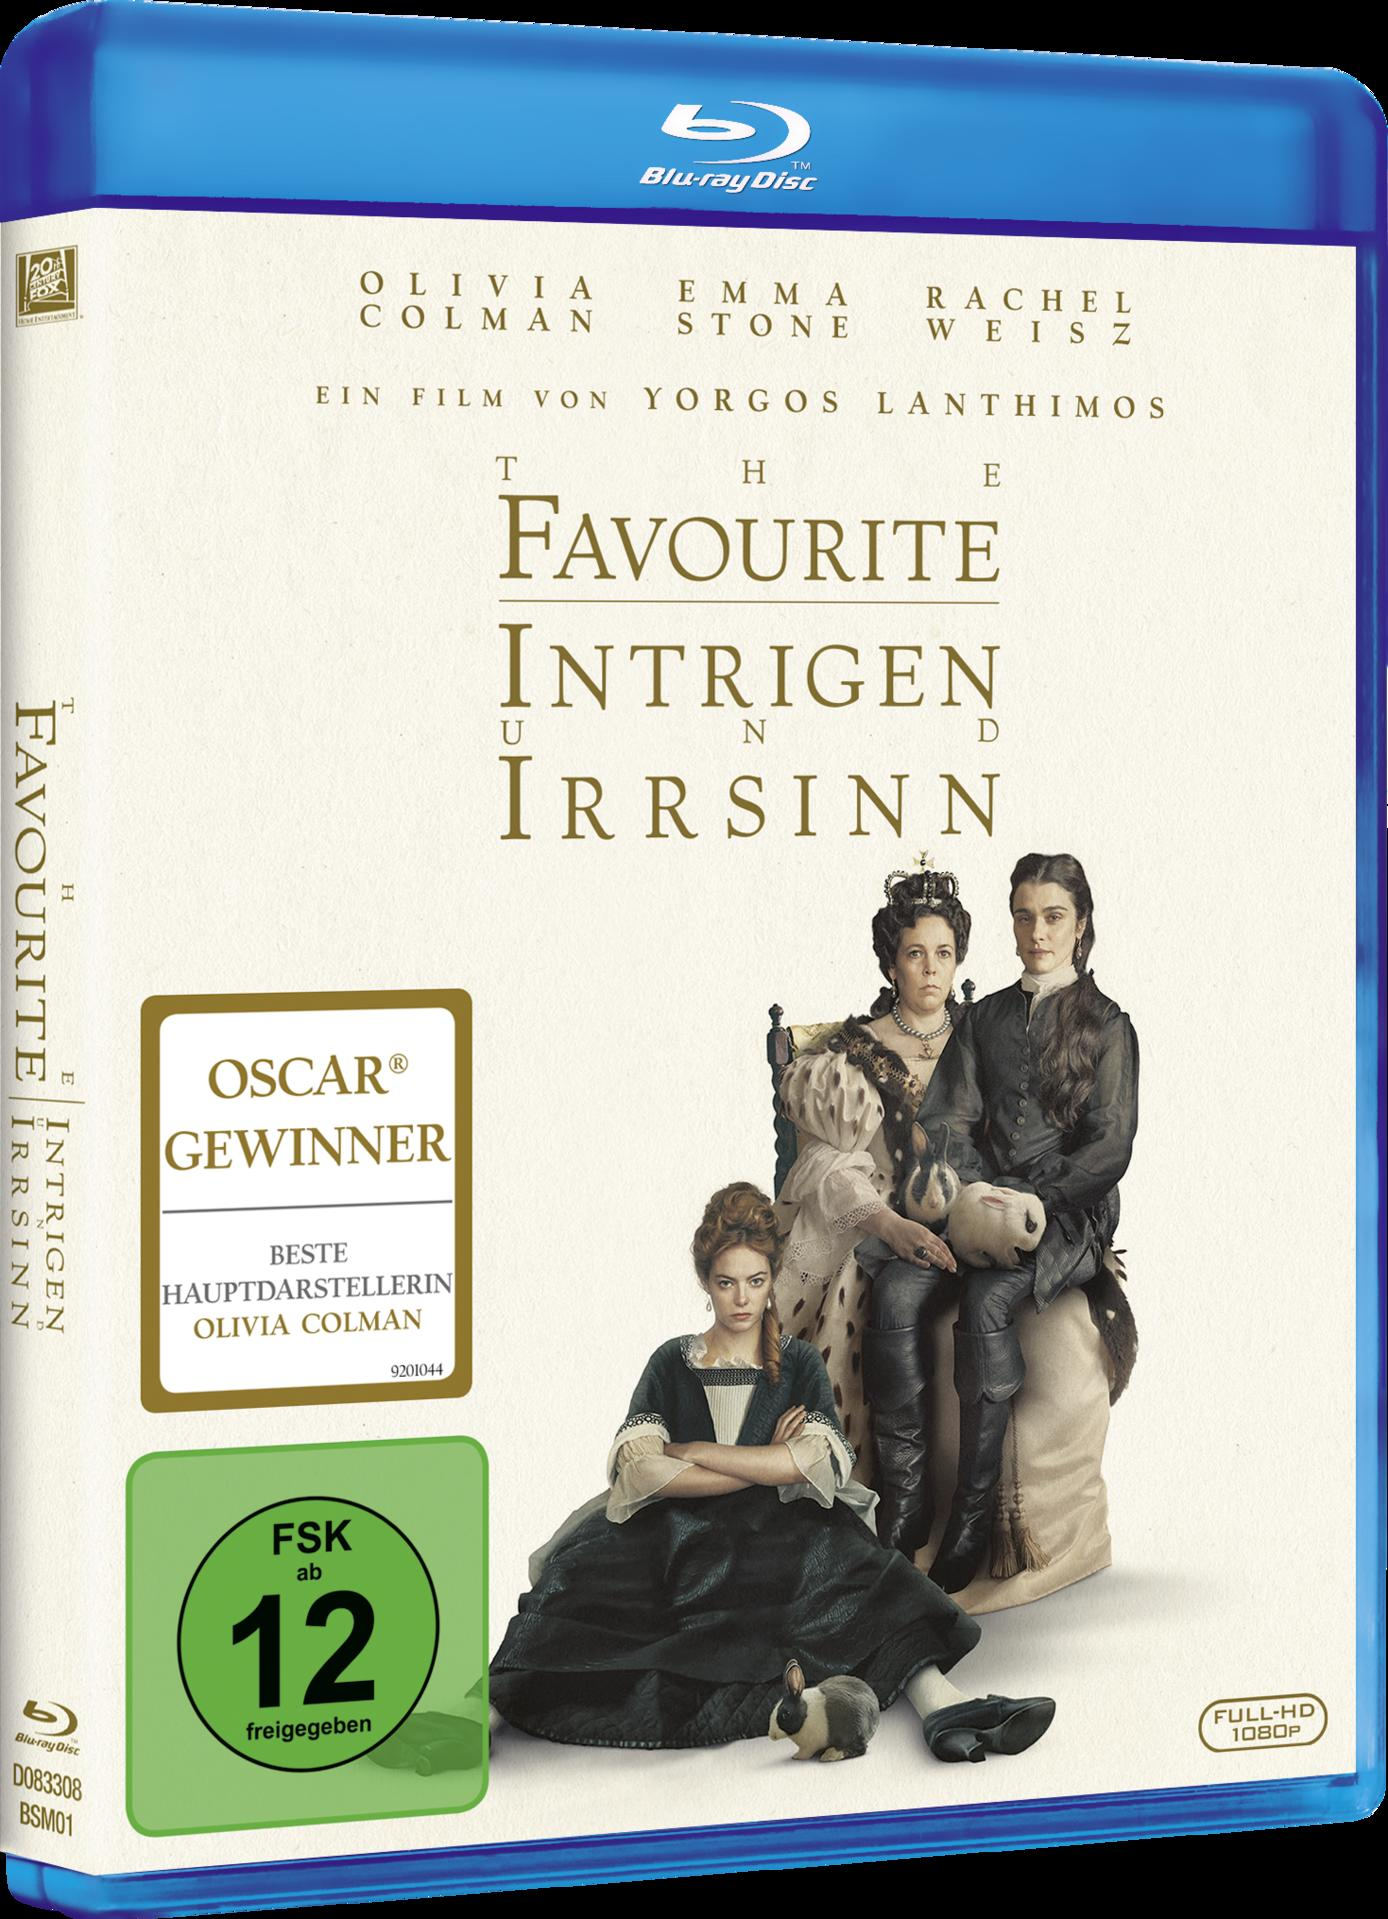 - Blu-ray The Intrigen Favourite Irrsinn und